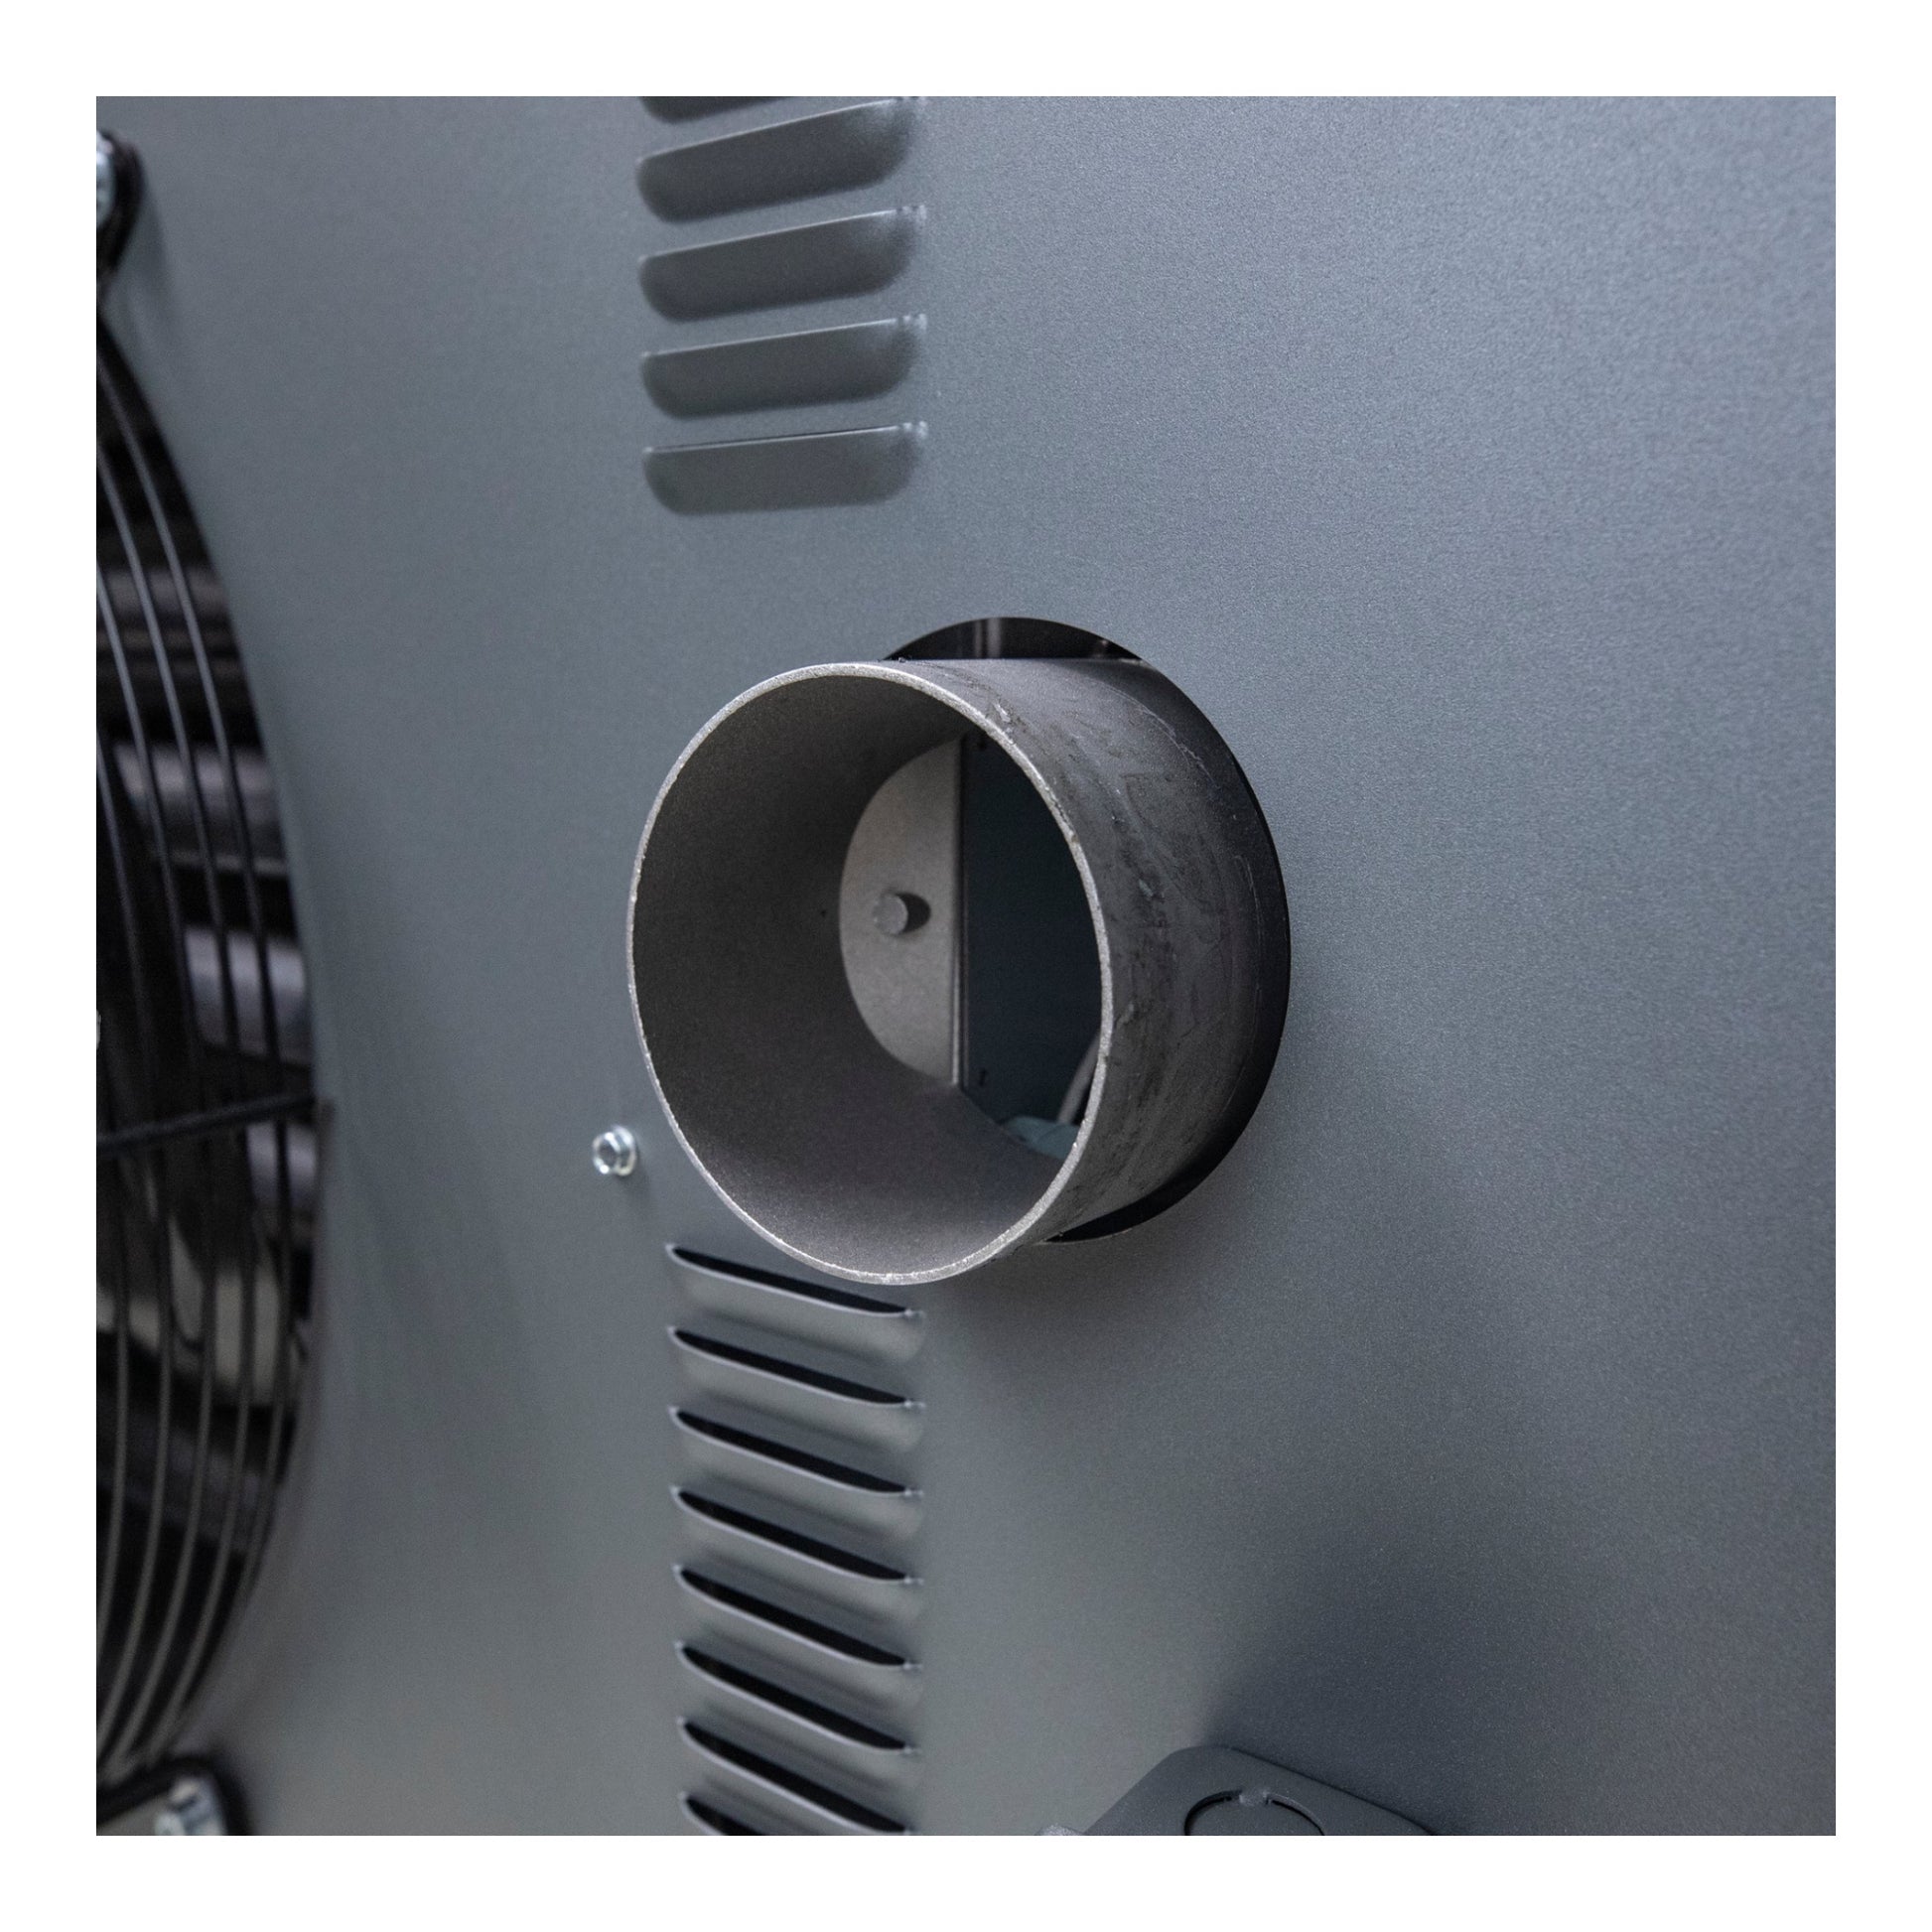 Mr Heater MHU250NGPALP Calentador de unidad ventilada de gas natural Big Maxx de 250 k BTU